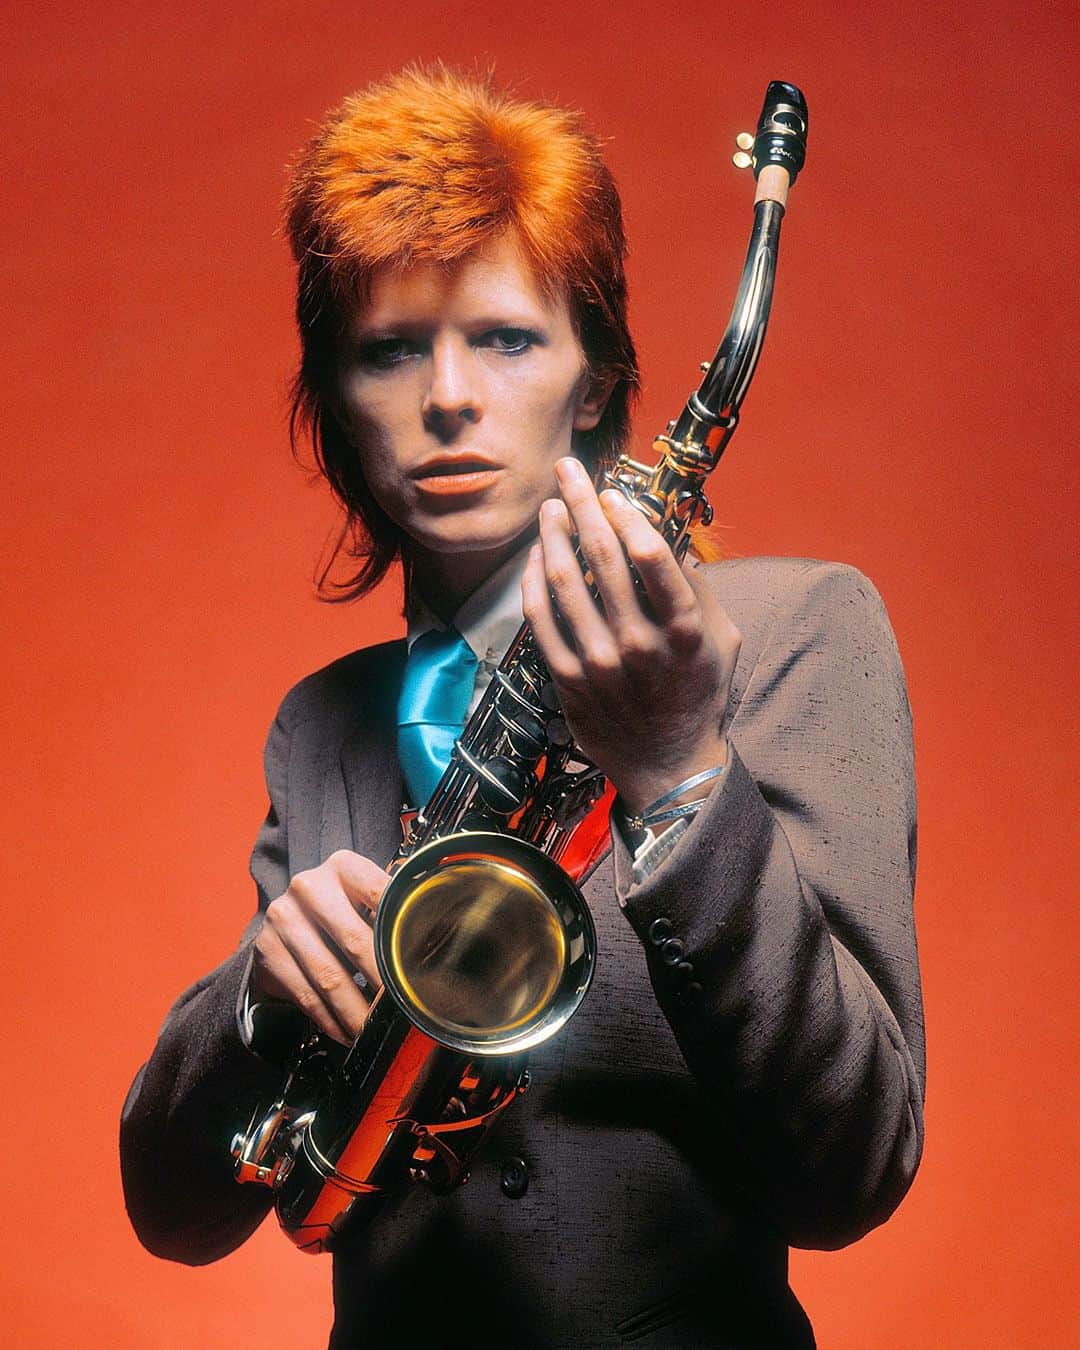 デヴィッド・ボウイさんのインスタグラム写真 - (デヴィッド・ボウイInstagram)「1973 MELODY MAKER AWARDS AND MICK ROCK SHOTS  “Wham bam thank you...”  Fifty years ago today (6th October 1973), RCA placed a full-page advert in Melody Maker showing their gratitude to the Melody Maker Awards and a message from David for his gongs in the following sections...  RCA congratulates David Bowie for Top Male Singer - British Section Top Single "Jean Genie" - British Section Top Producer - International Section Top Composer - International Section  It was a wonderful triumph for a great year and what’s more, it was the first glimpse of the latest session with Mick Rock. More to follow.   #BowiePinUps50」10月7日 8時02分 - davidbowie